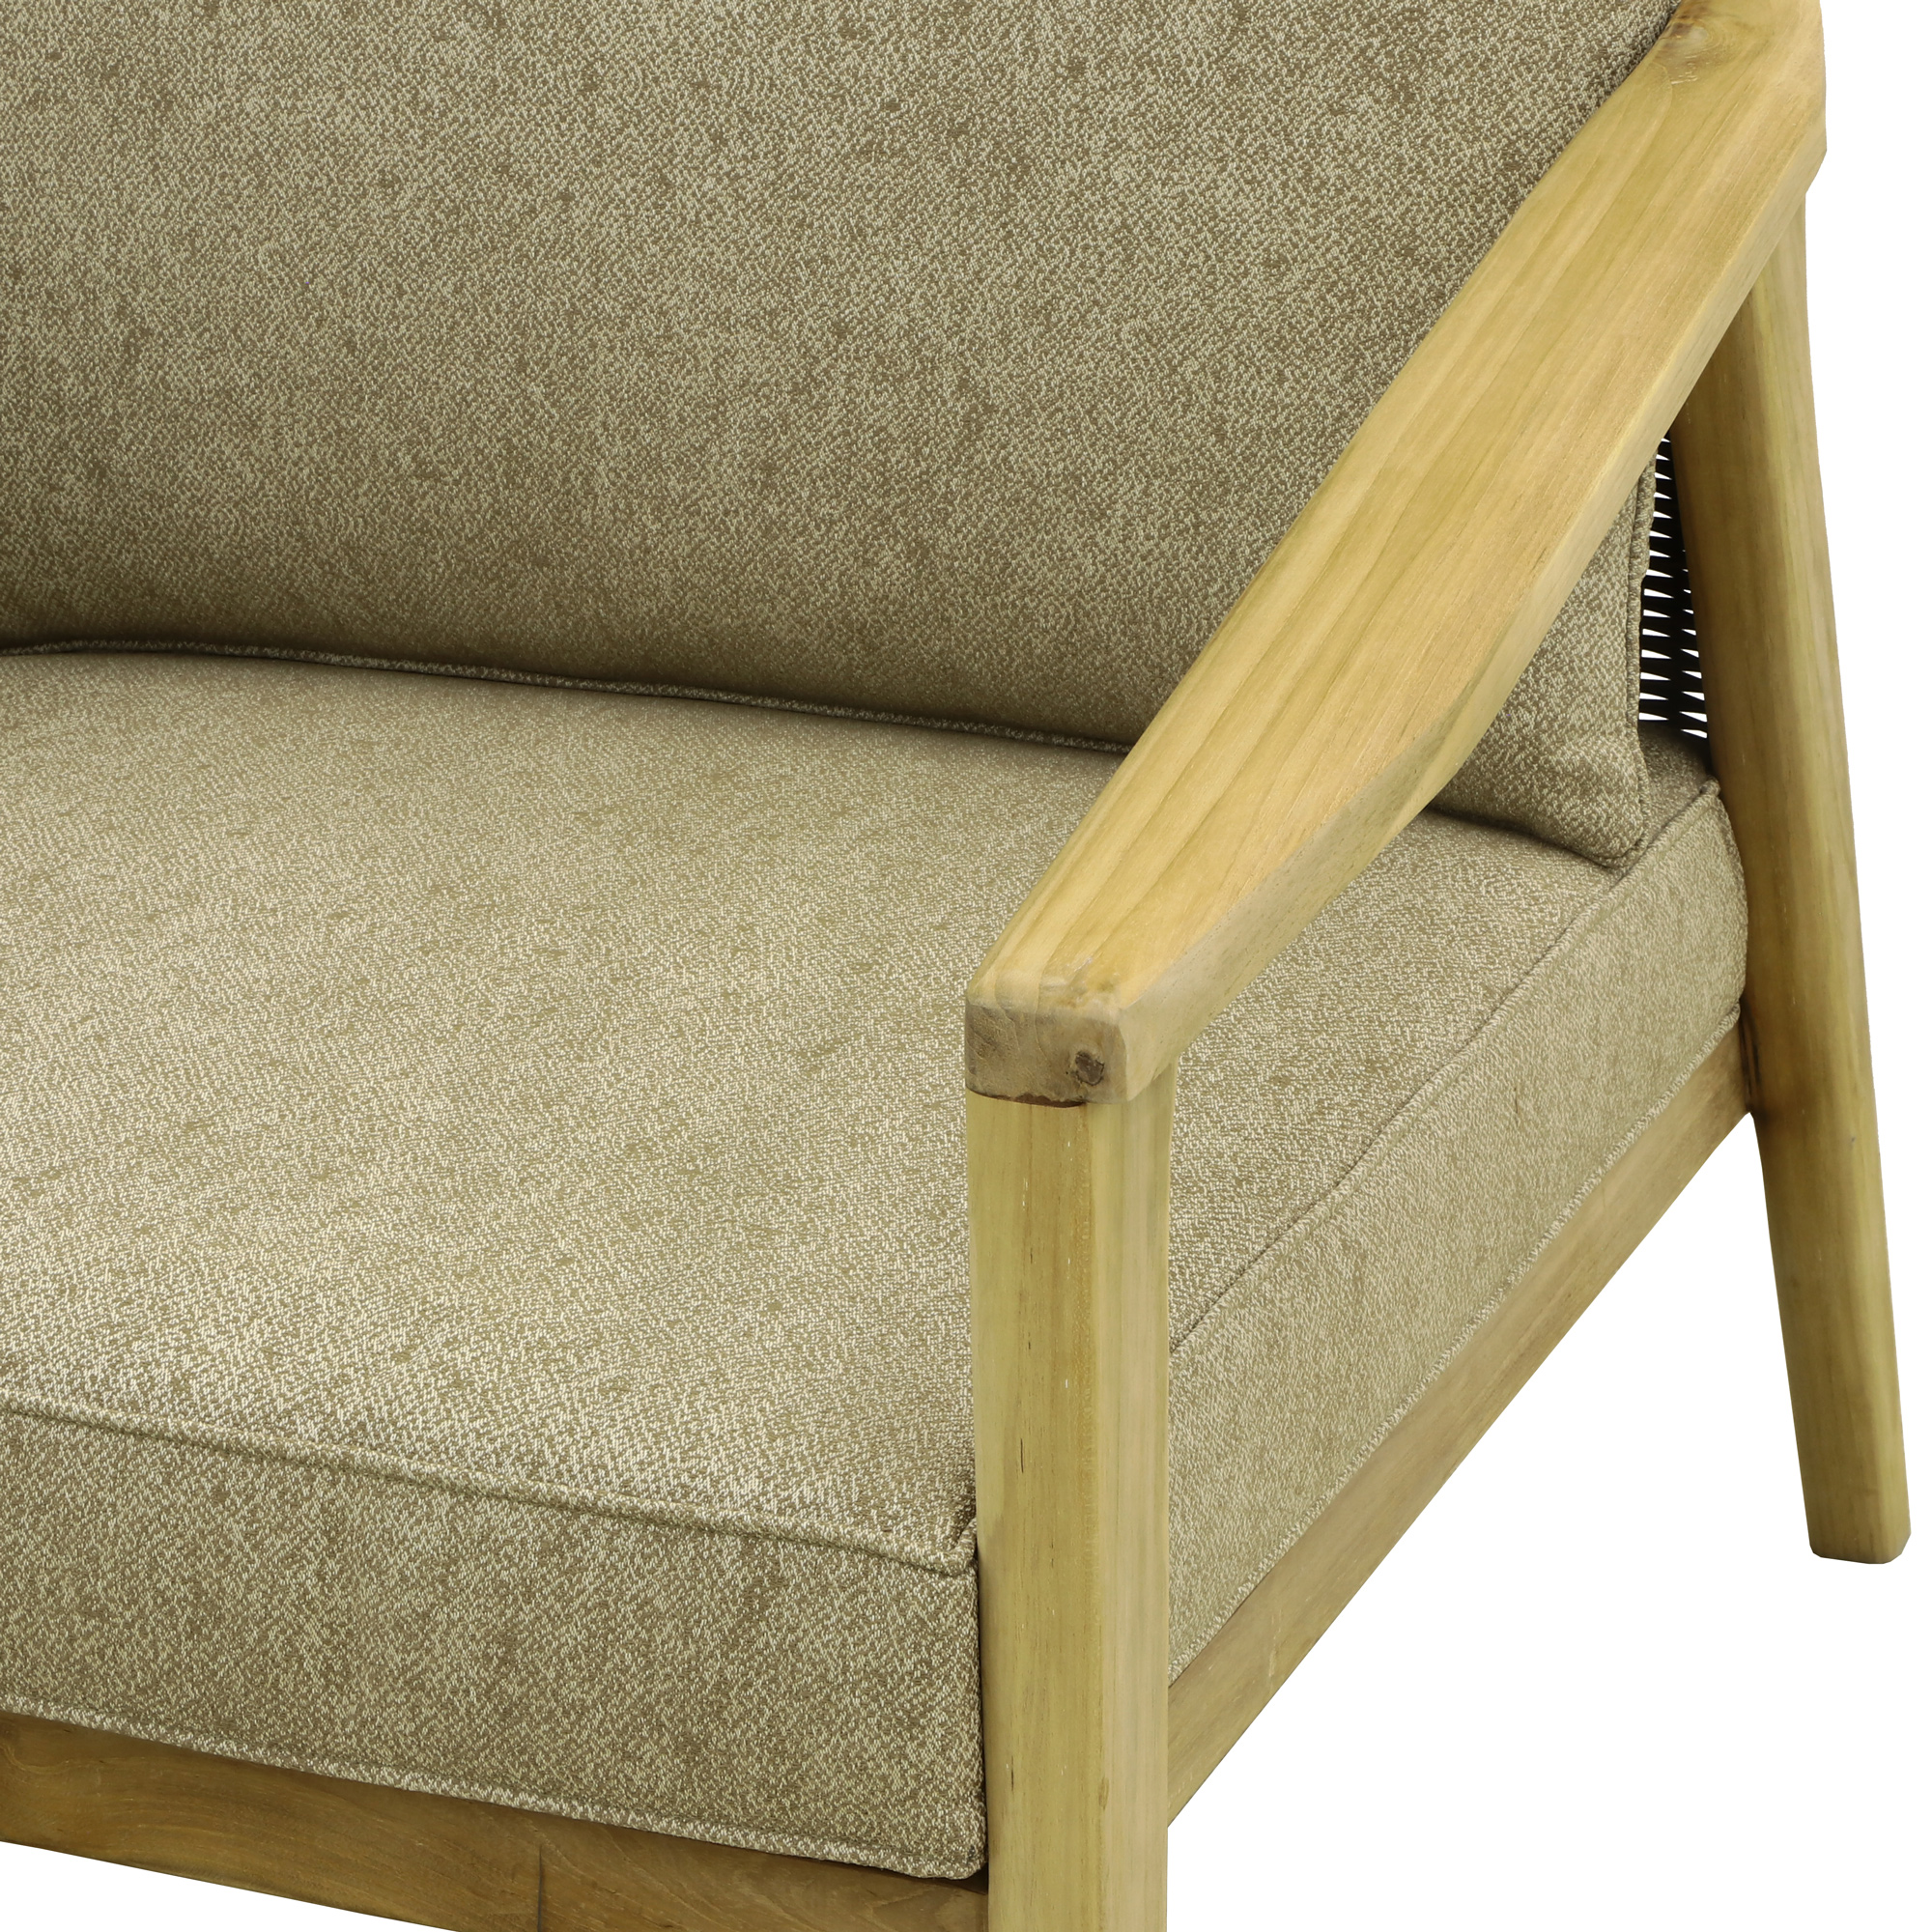 Комплект мебели Jepara Porto Cervo l 6 предметов, цвет коричневый, размер 82х210х85 - фото 5